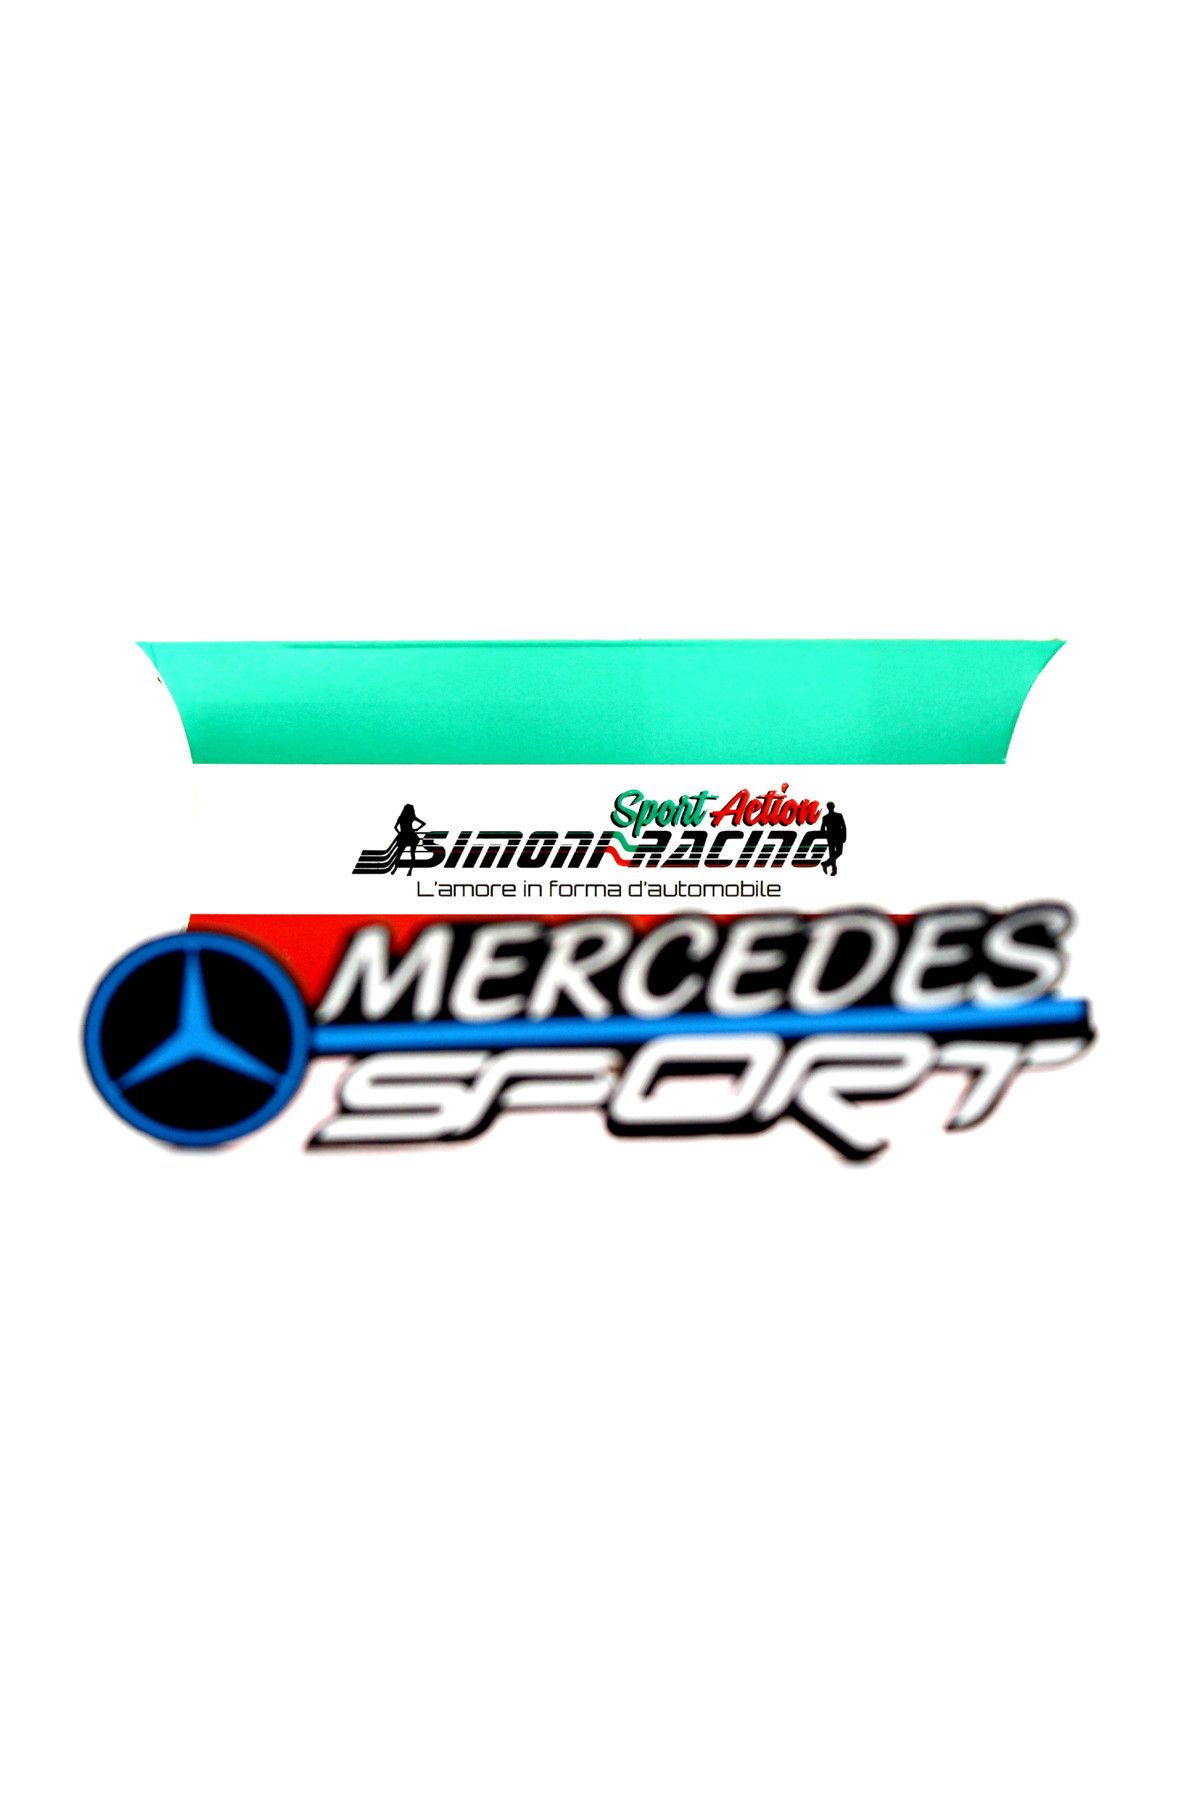 Simoni Racing Mercedes Arma